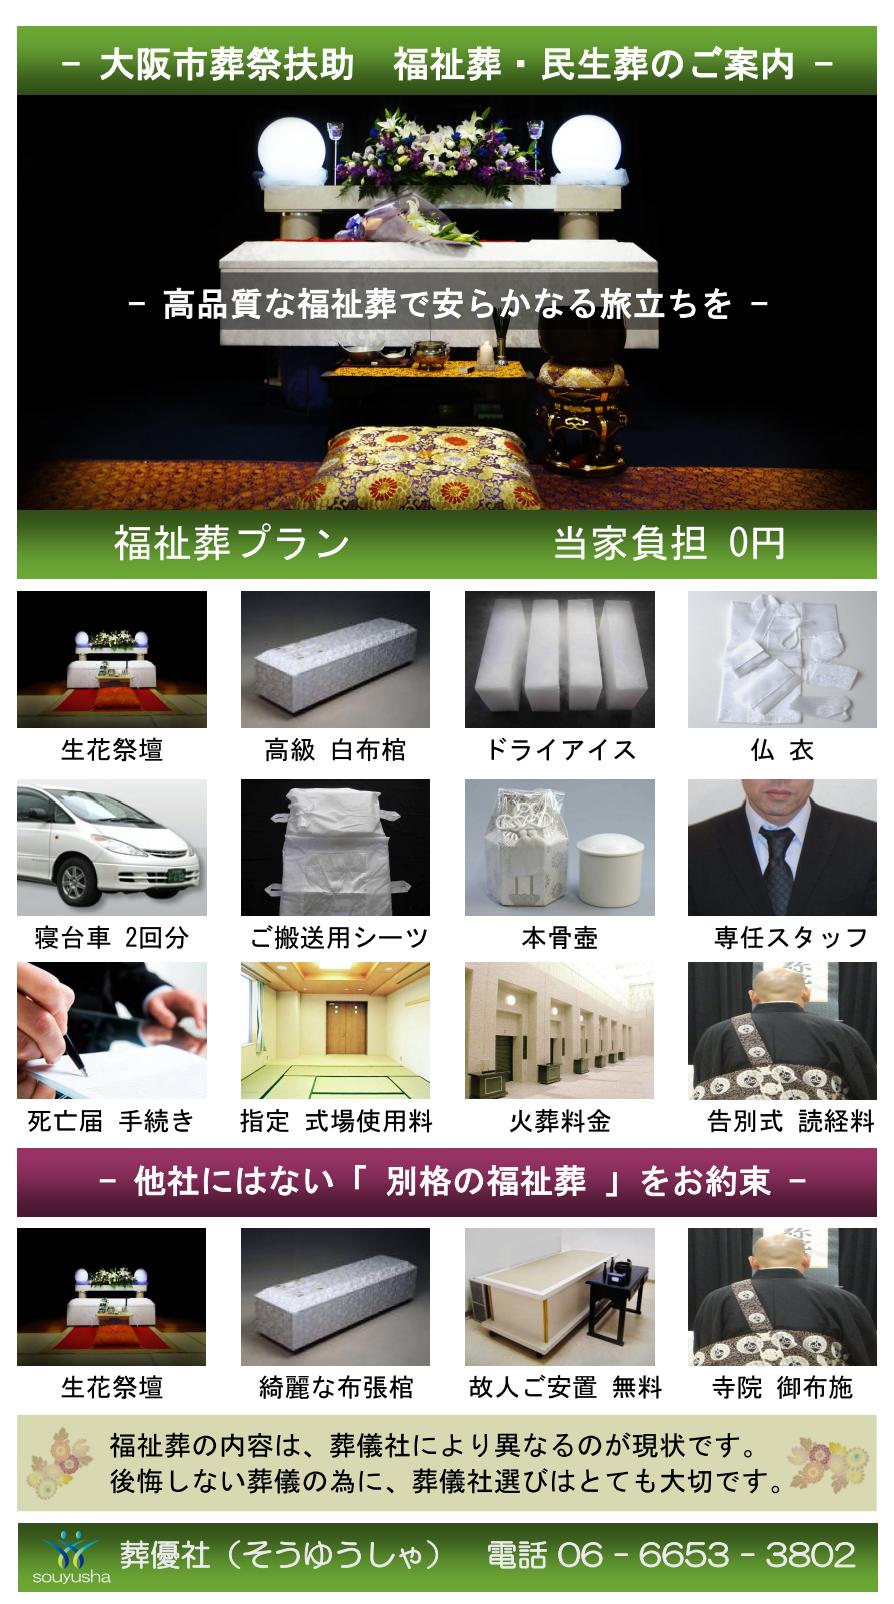 大阪市相愛扶助での福祉葬・生活保護葬儀